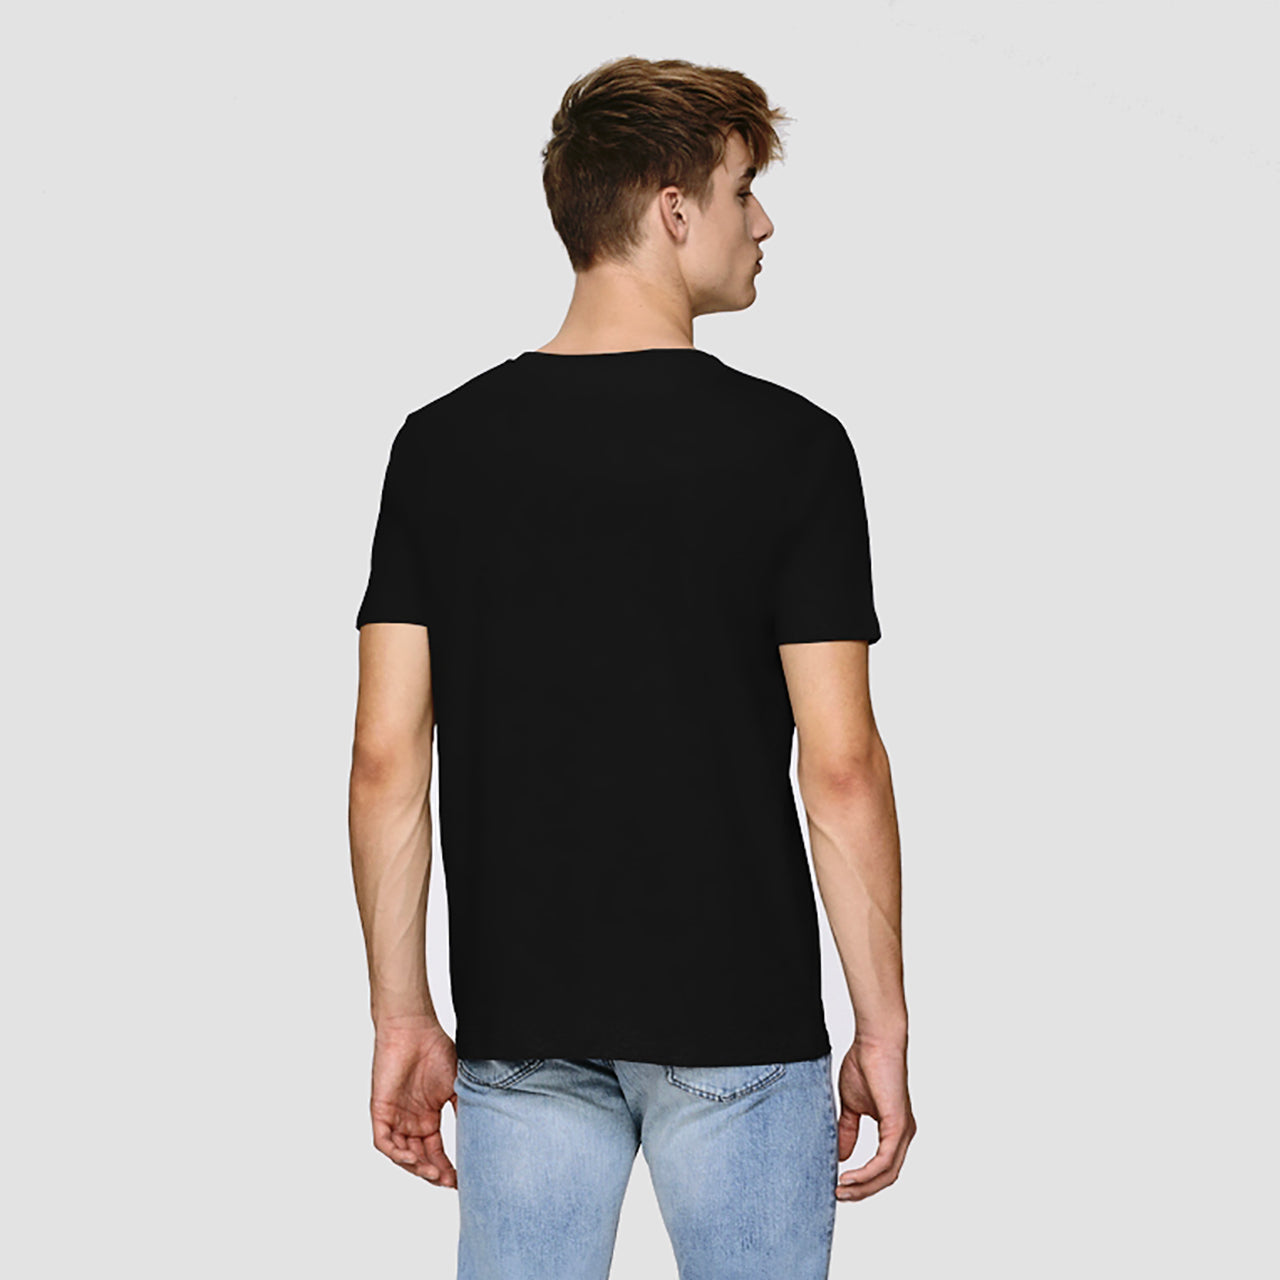 T-shirt - Black Hole T-shirt